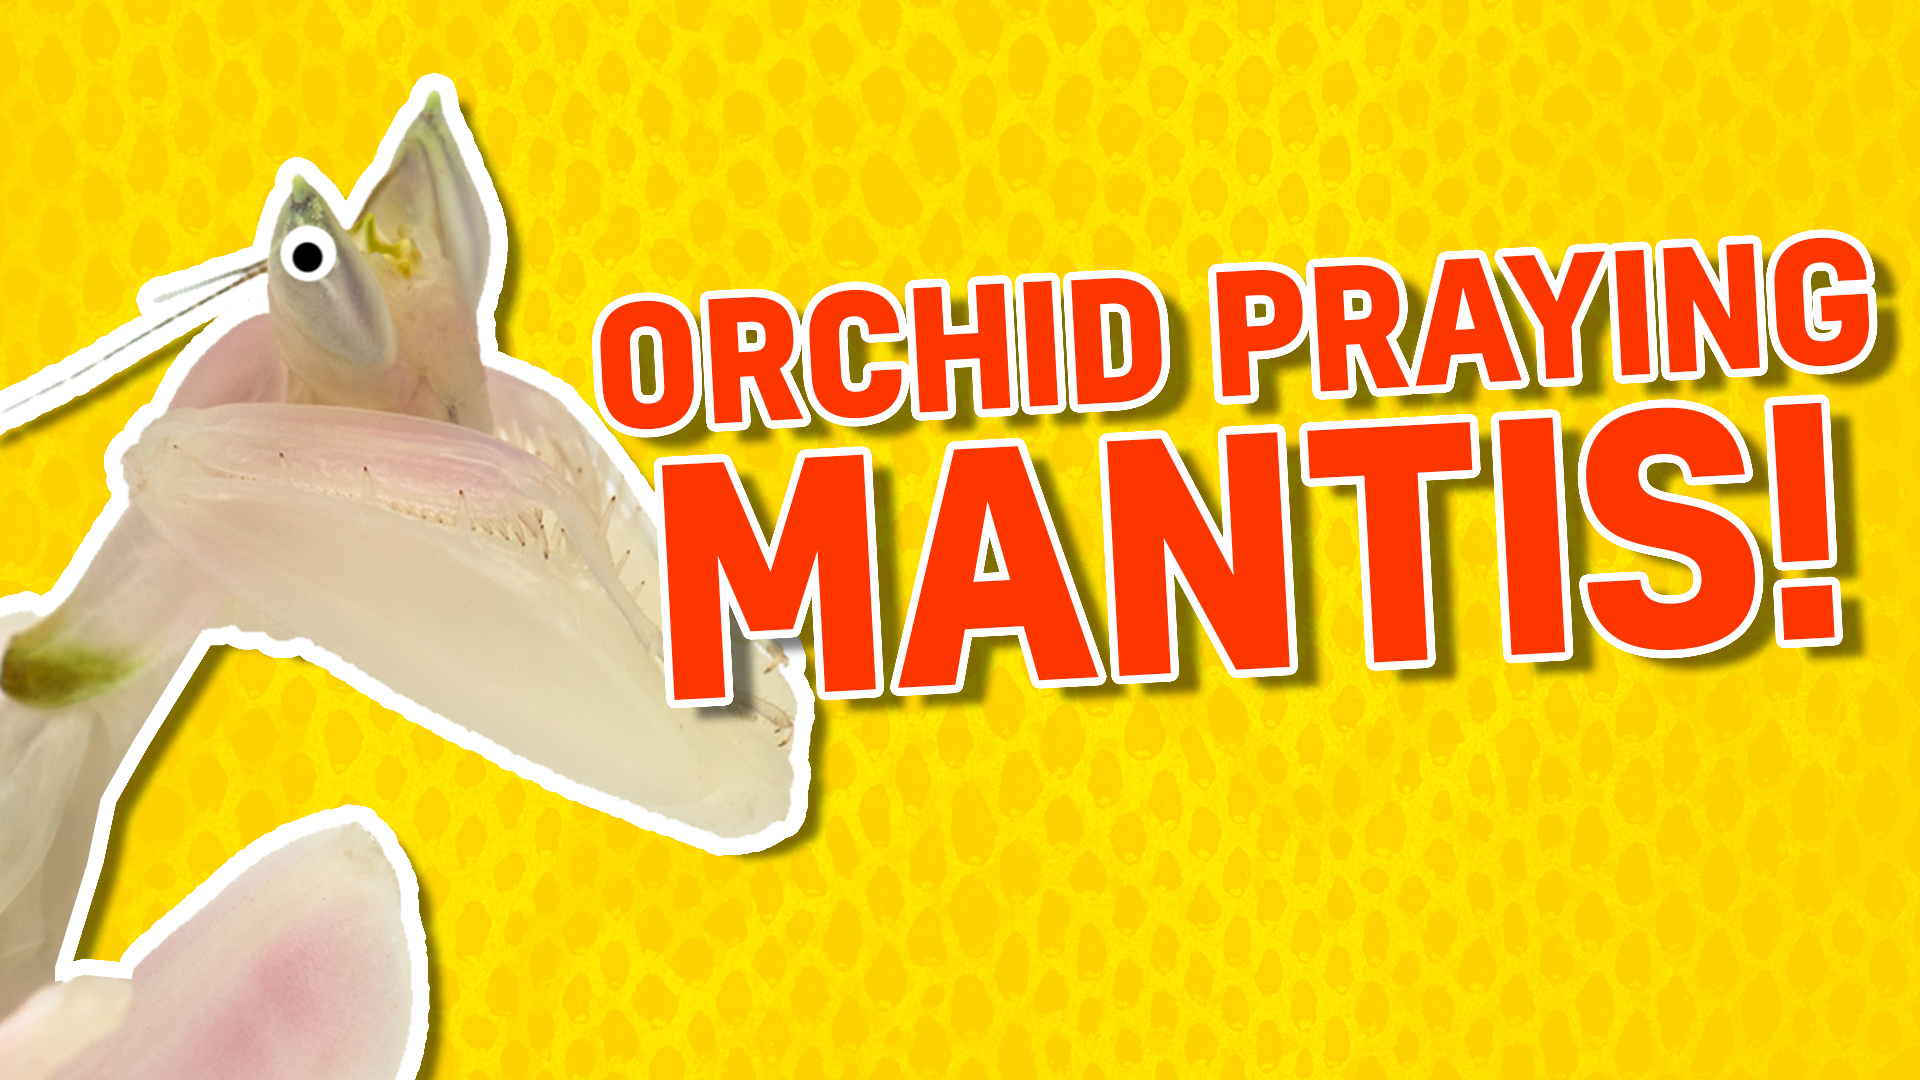 Orchid praying mantis